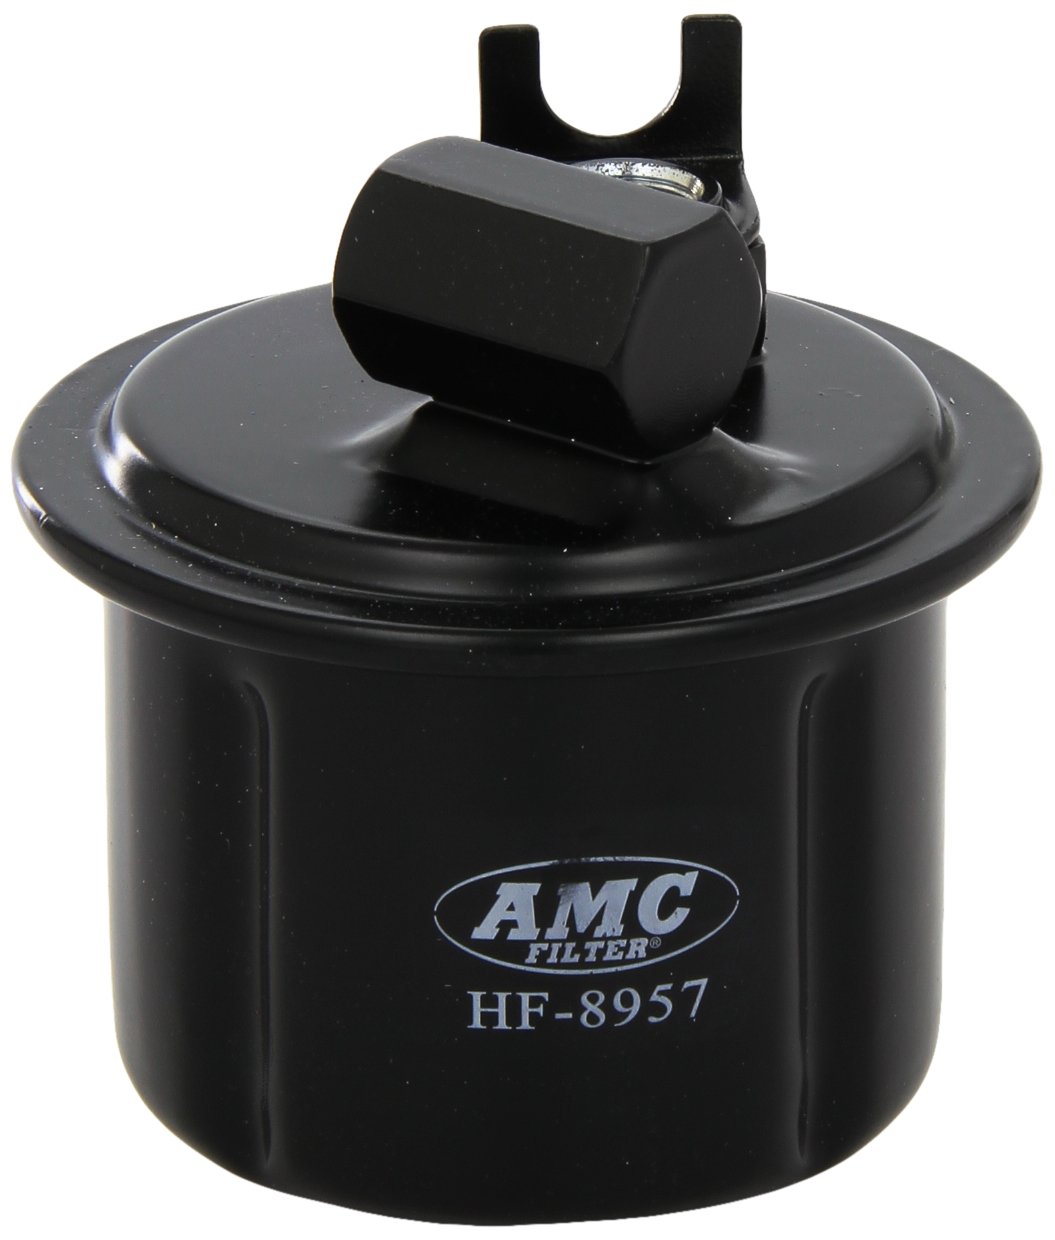 AMC Filter HF-8957 Kraftstoff Filter